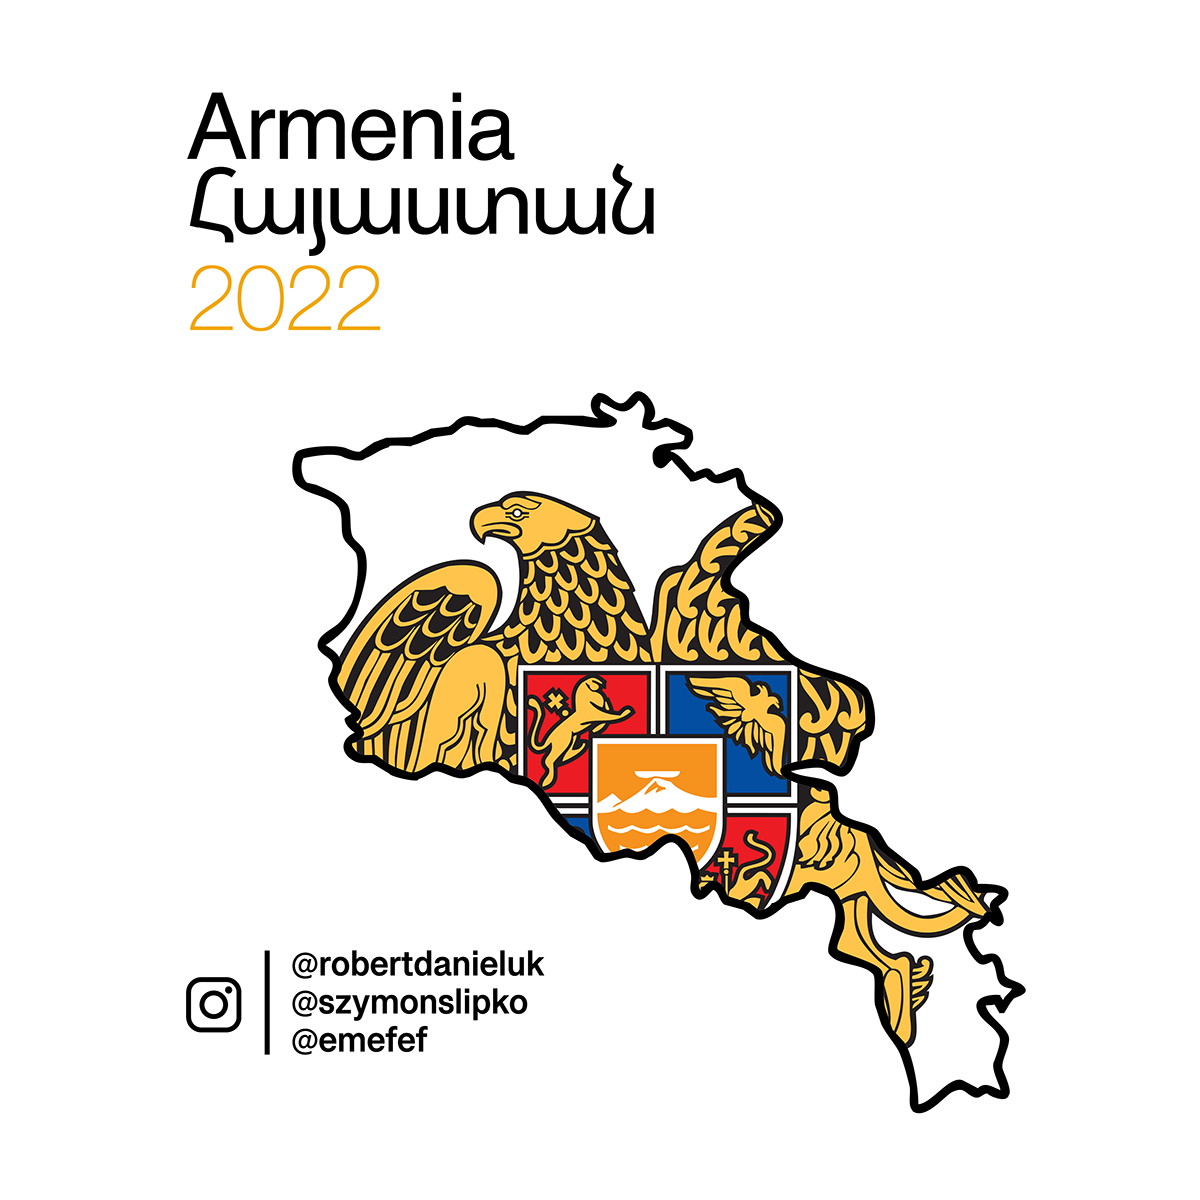 Armenia by Dawid Markoff